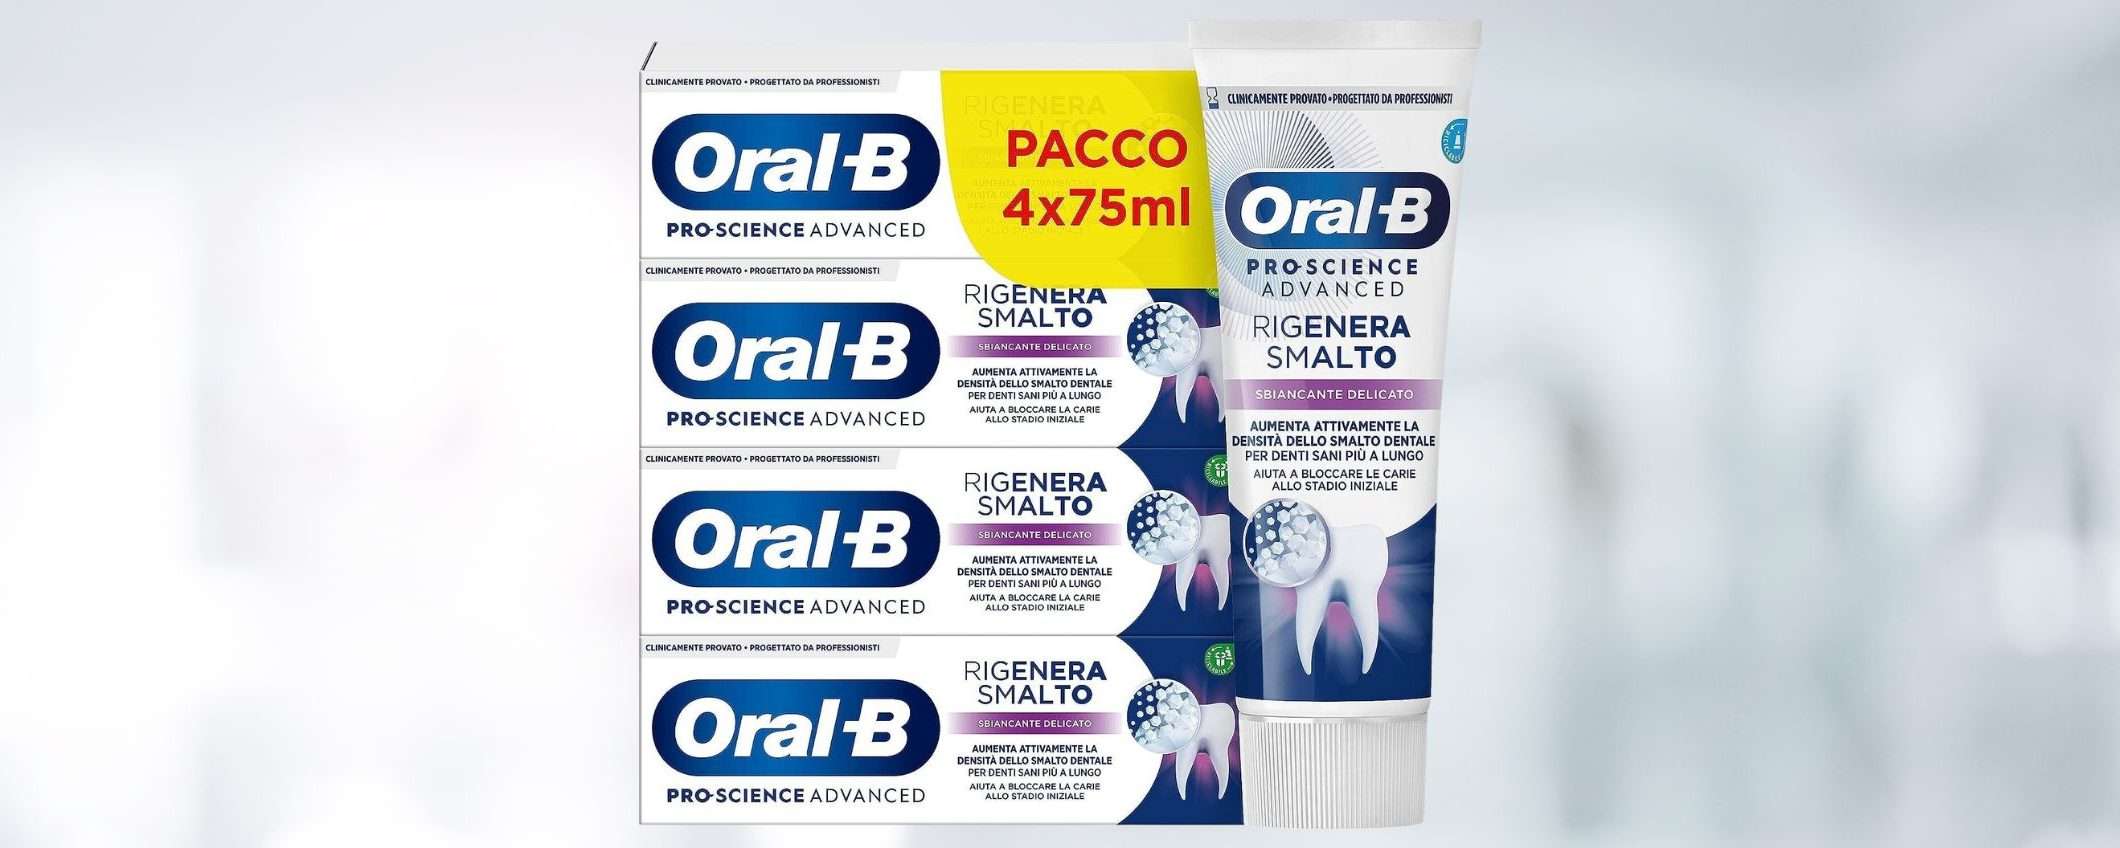 Dentifricio Oral-B Rigenera Smalto: confezione da 4 a PREZZO SCORTA